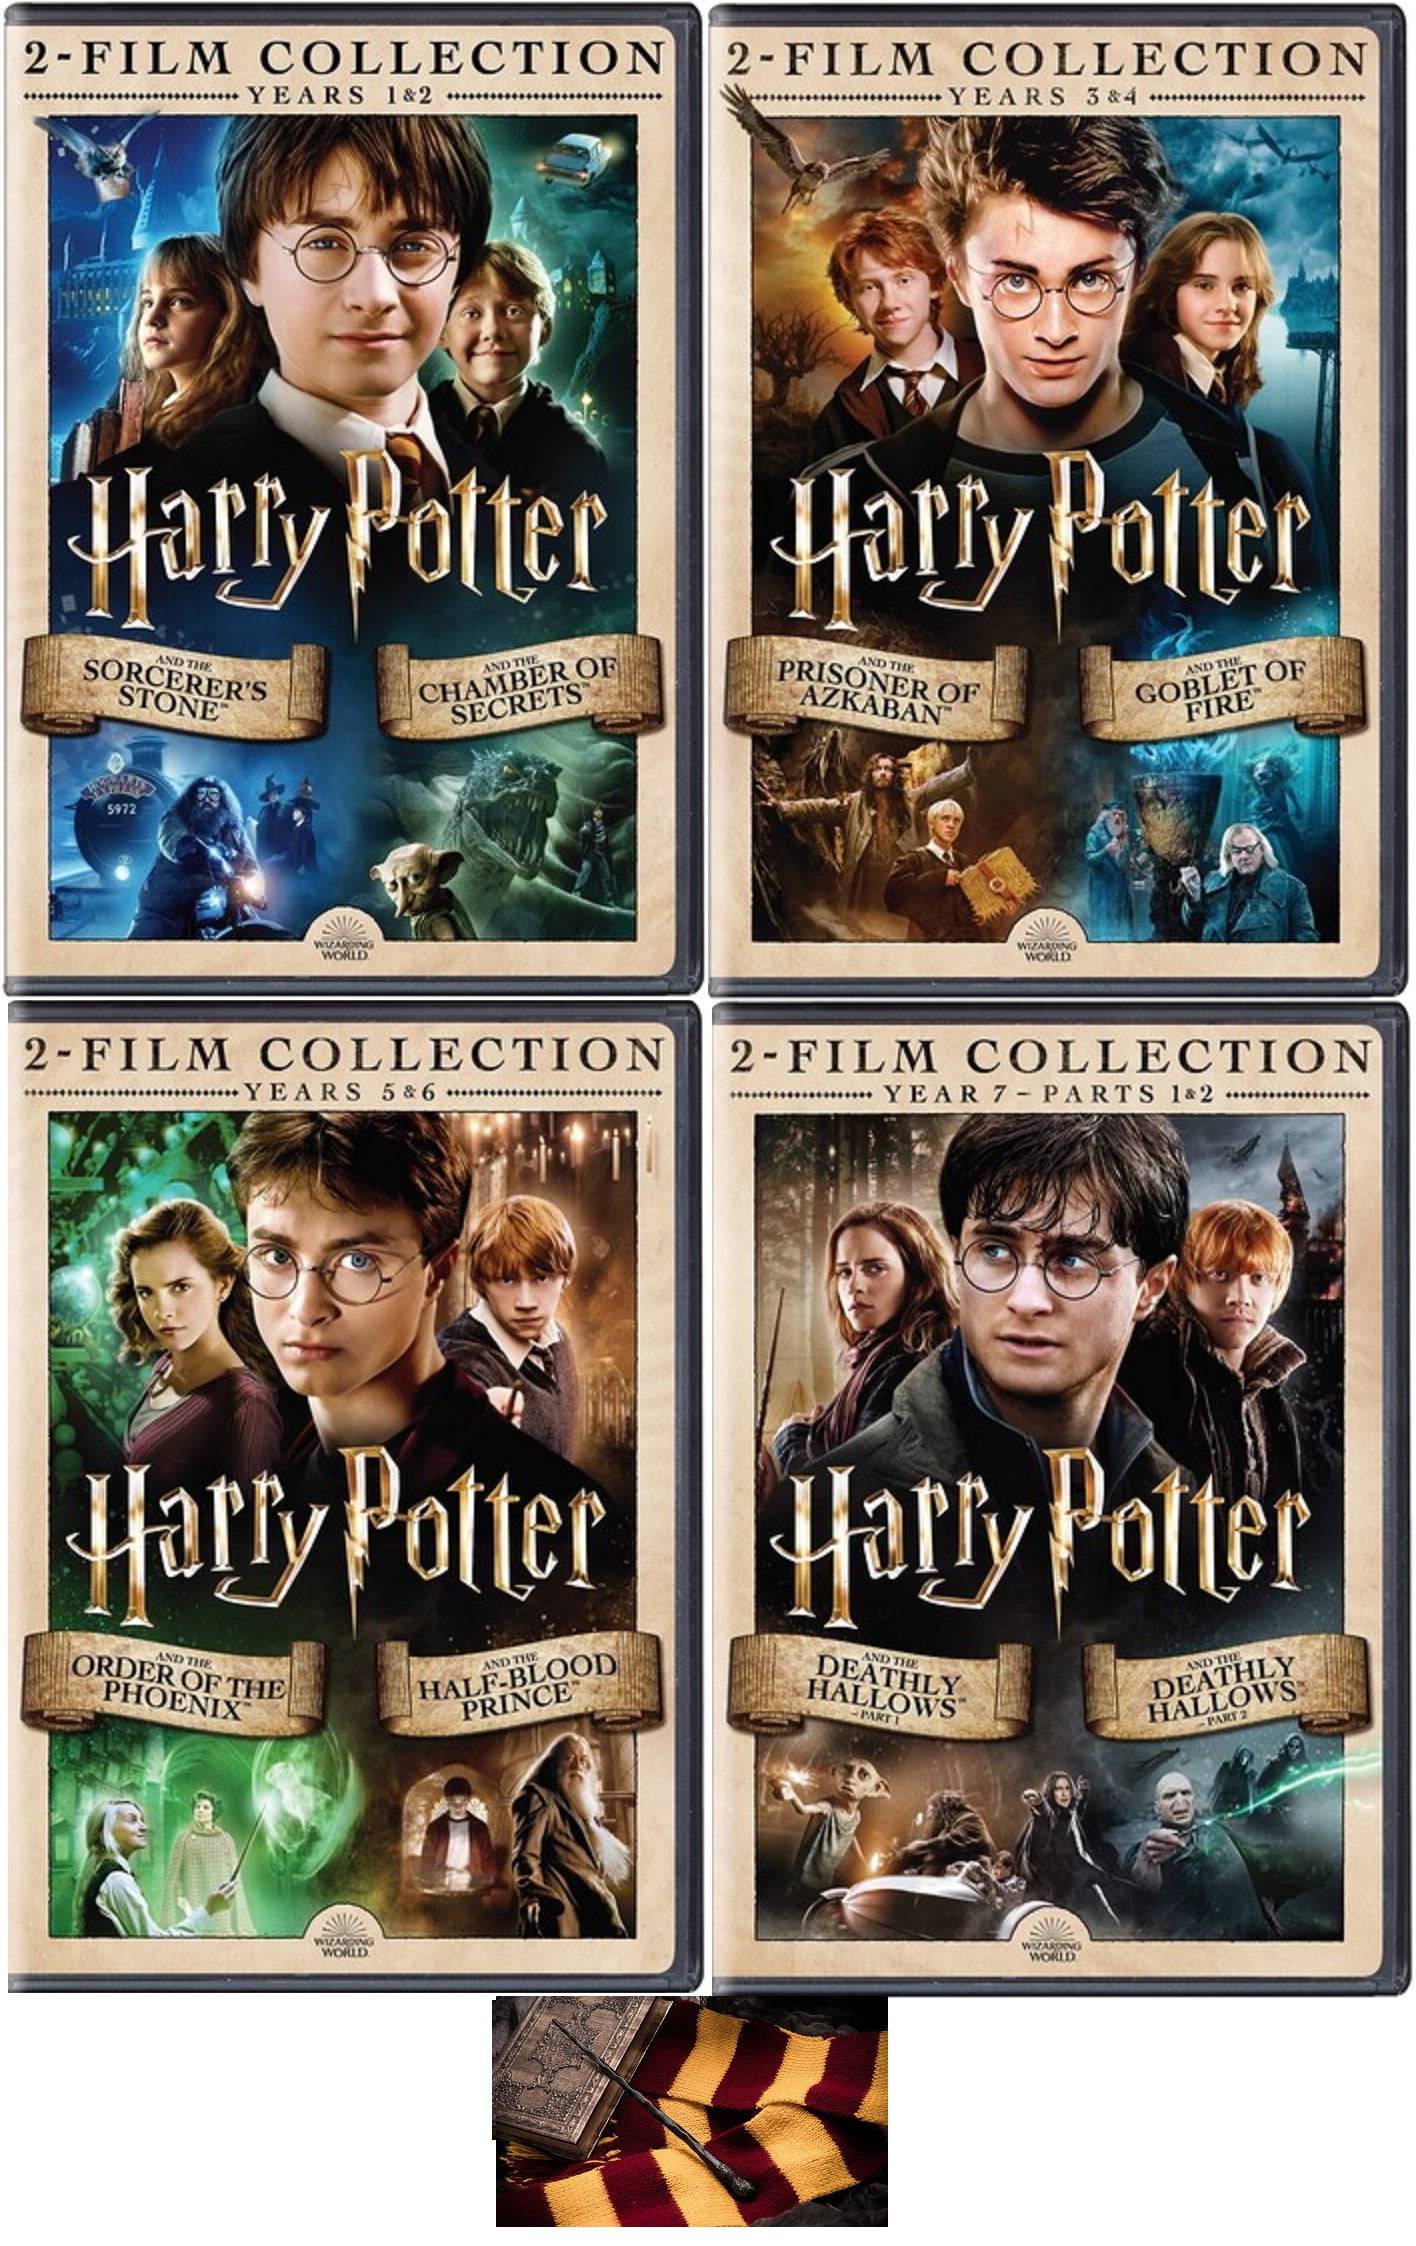 Harry Potter et le Prisonnier d'Azkaban (3) Fèves Brillantes